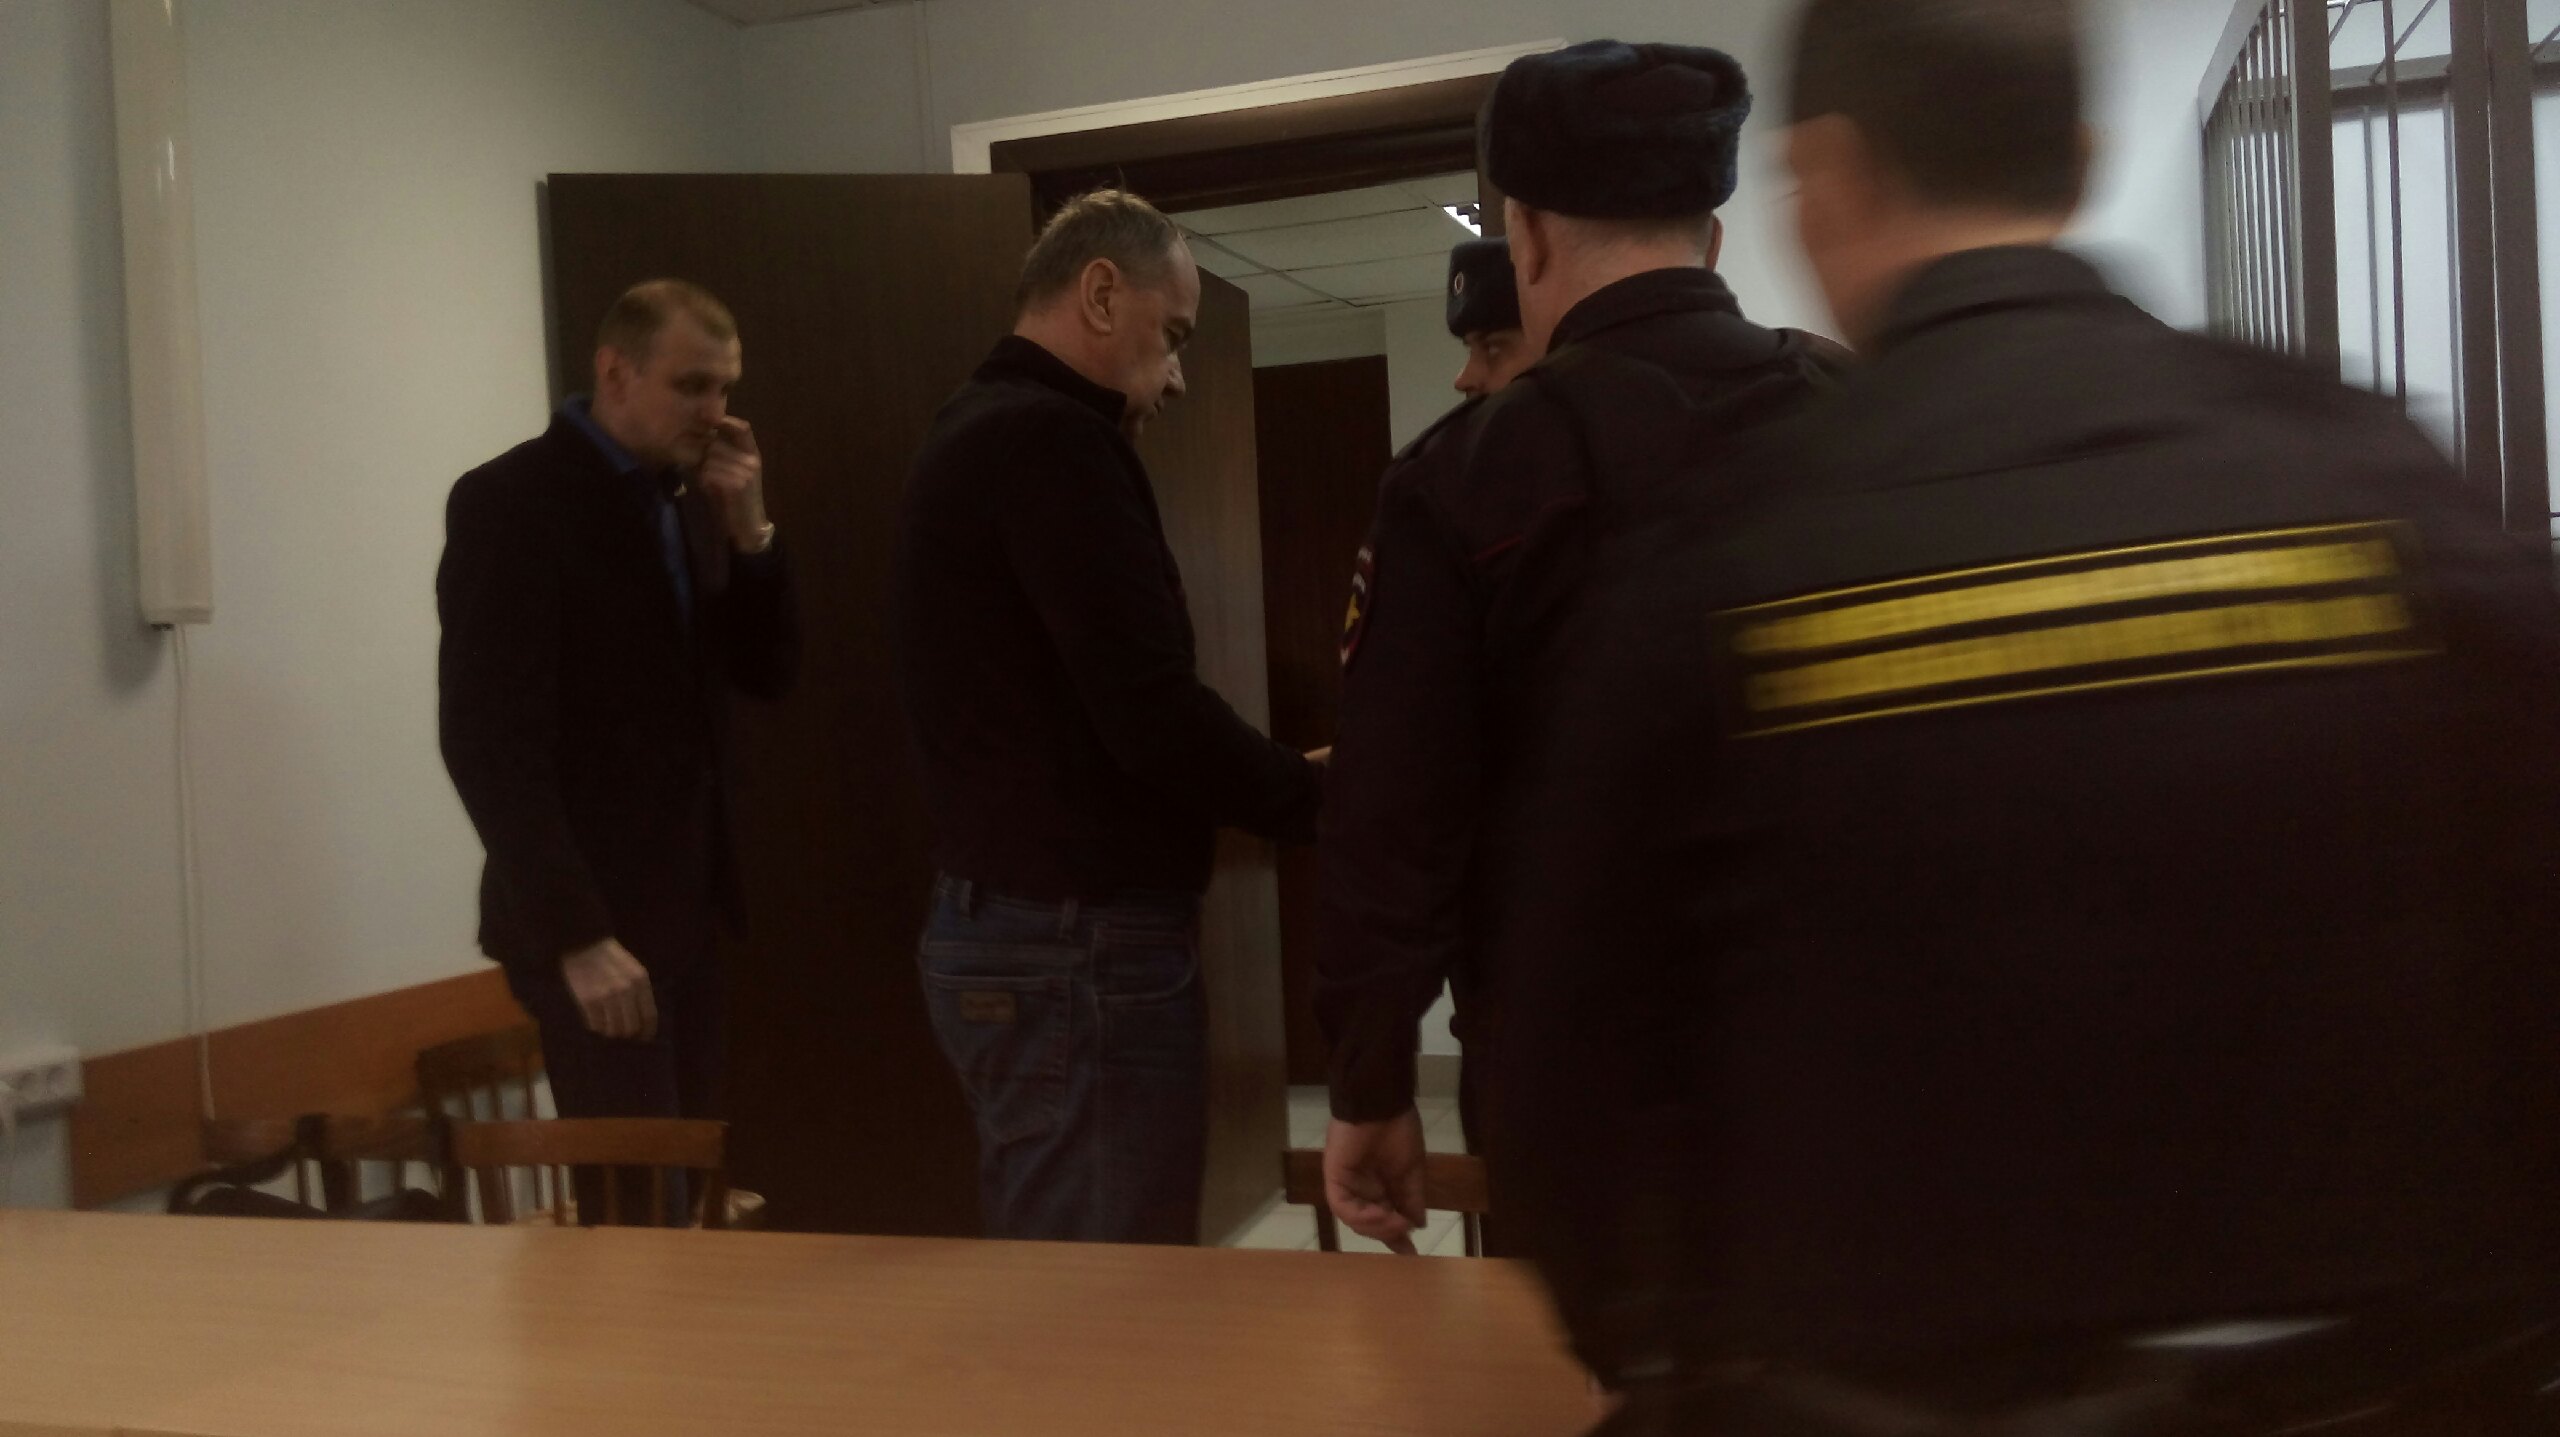 Арестованный за взятку экс-министр транспорта Карелии Кайдалов и его подельник Волчек не признают вину  